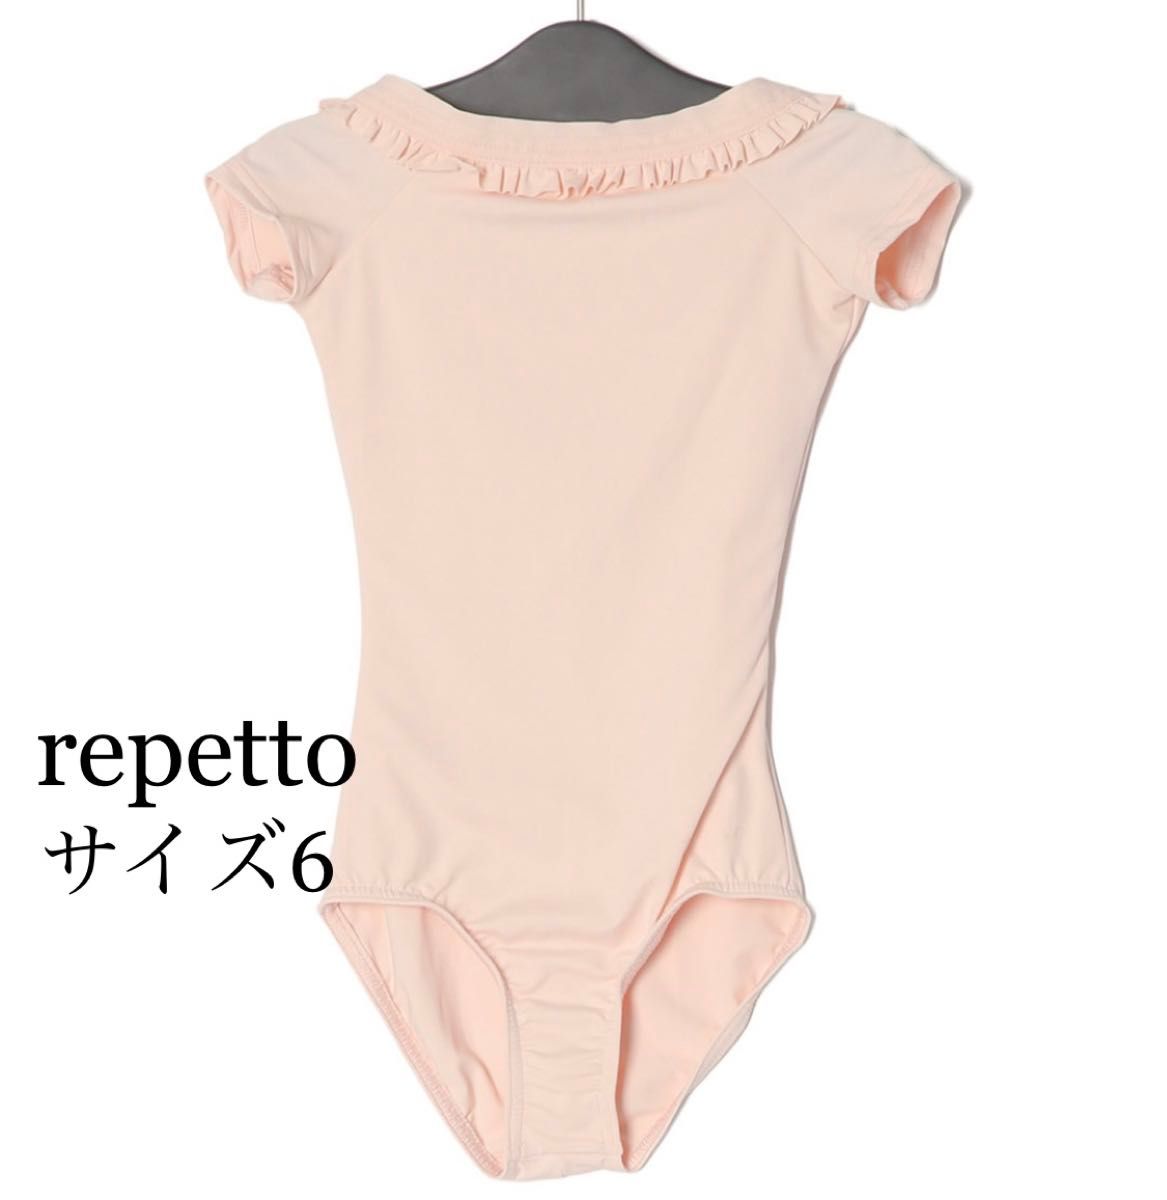 新品 repetto レペット 6 キッズ レオタード 定価9790円